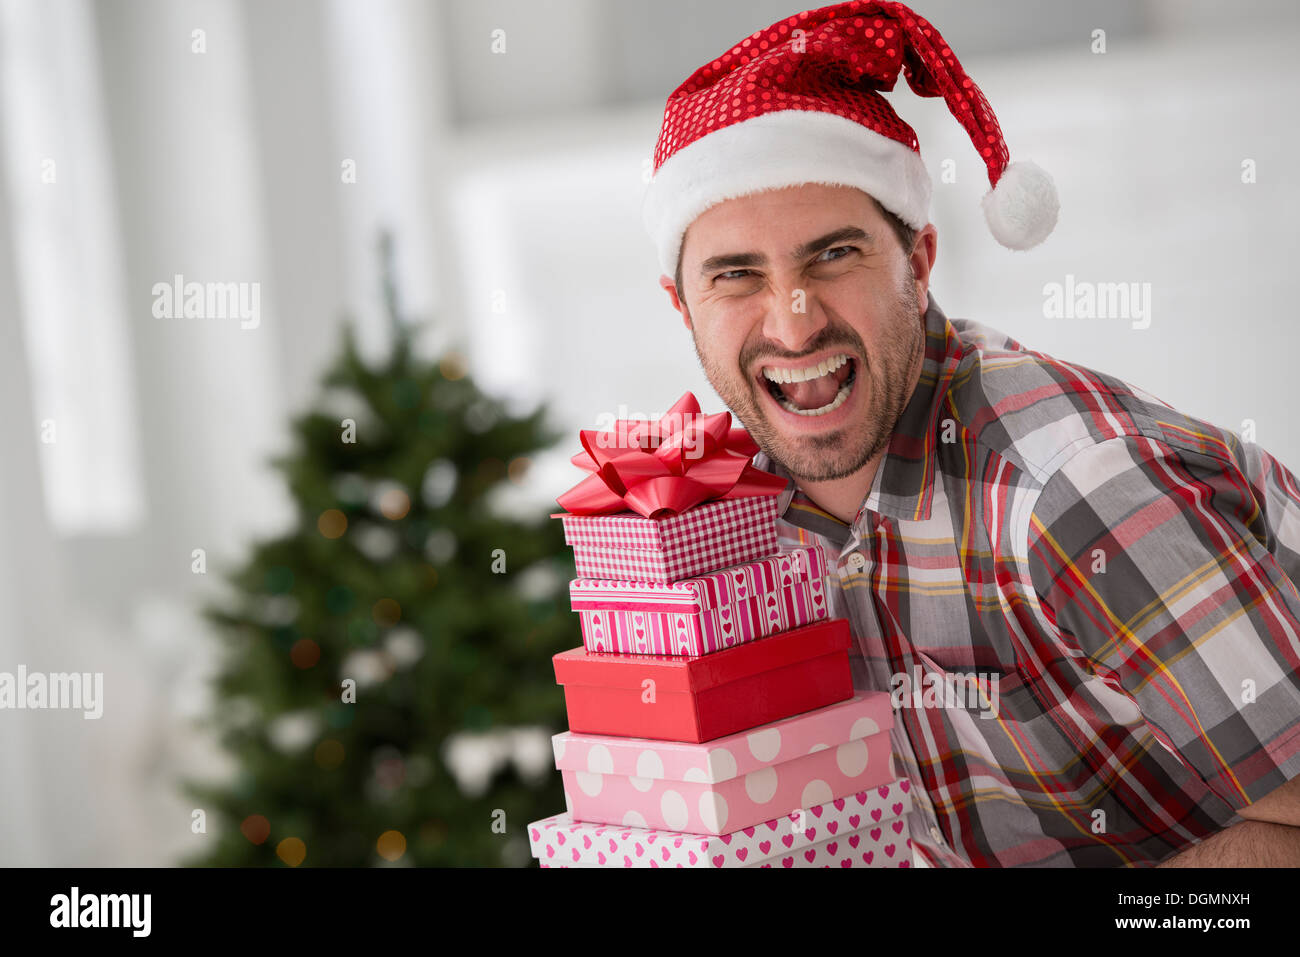 L'intérieur du bureau. La célébration de Noël. Un homme dans un chapeau de Père Noël tenant une pile de cadeaux. Arbre de Noël décoré. Banque D'Images